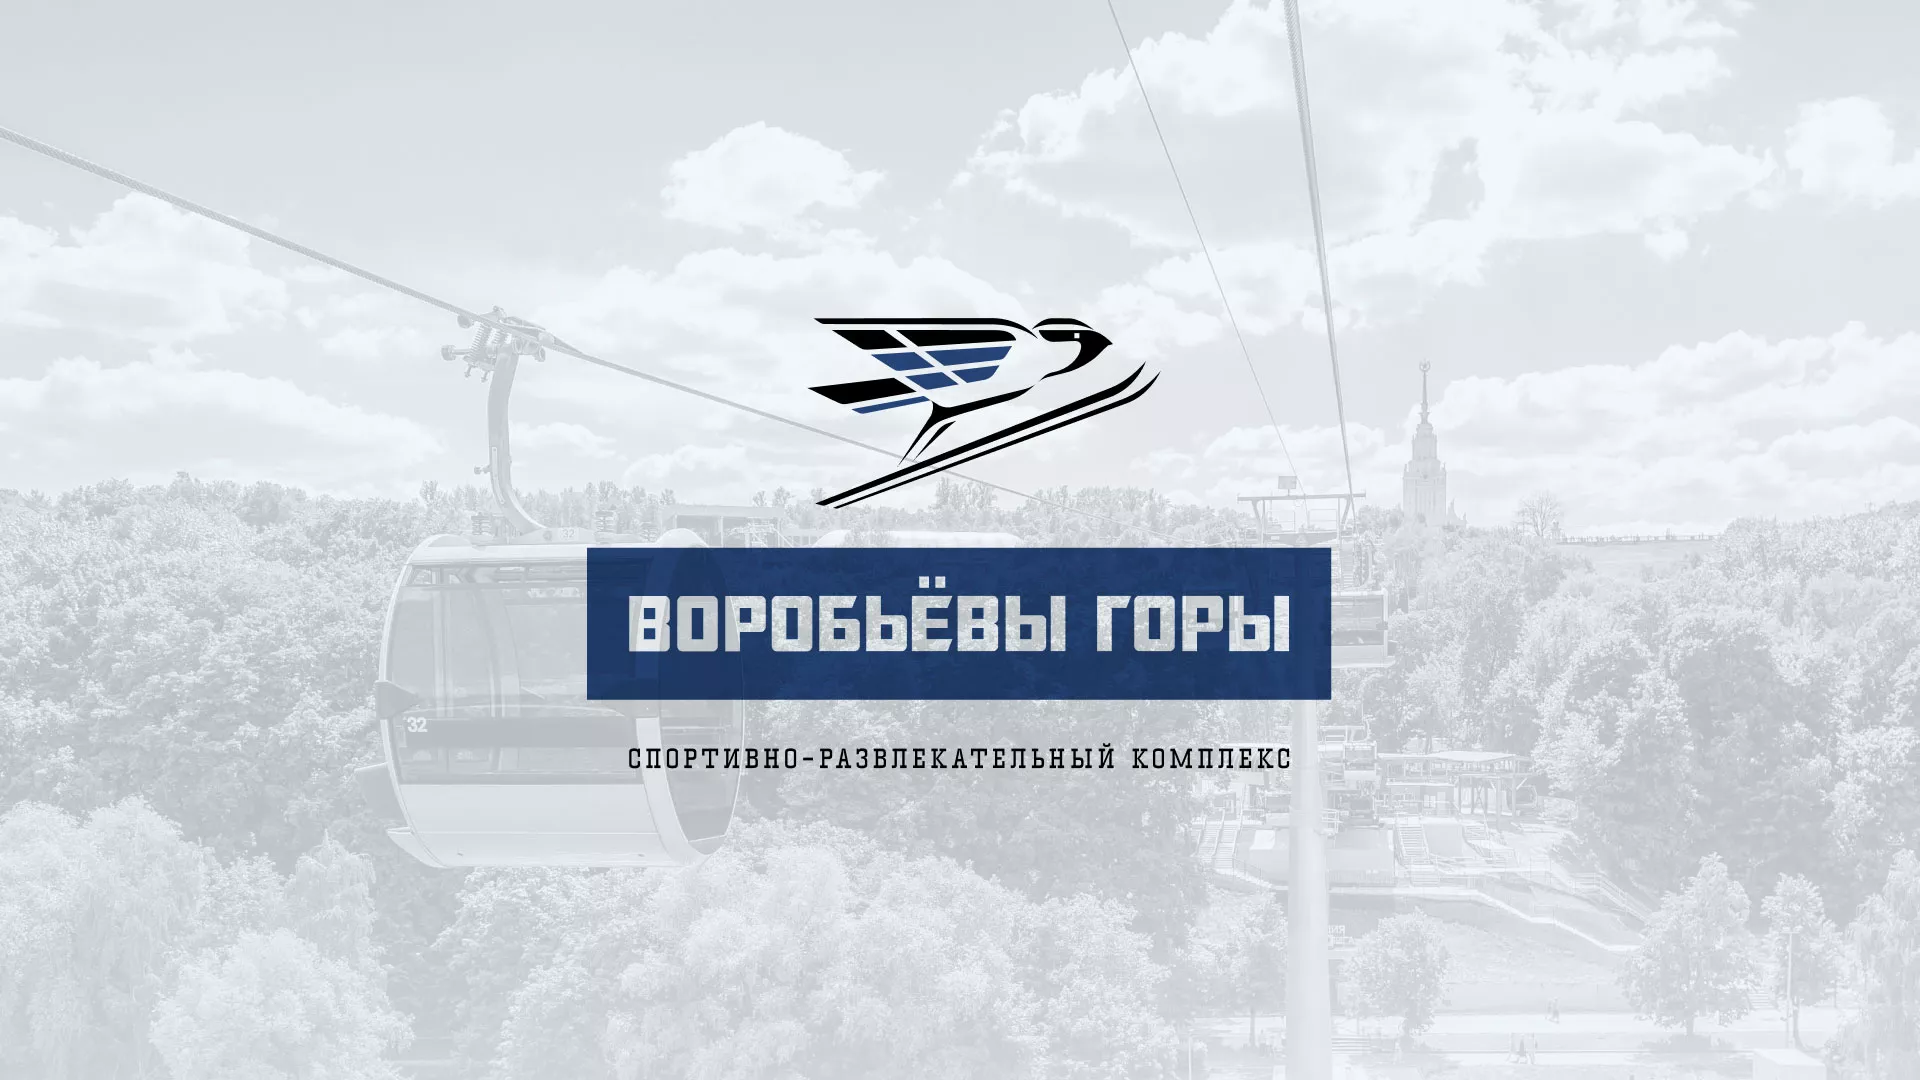 Разработка сайта в Хотьково для спортивно-развлекательного комплекса «Воробьёвы горы»